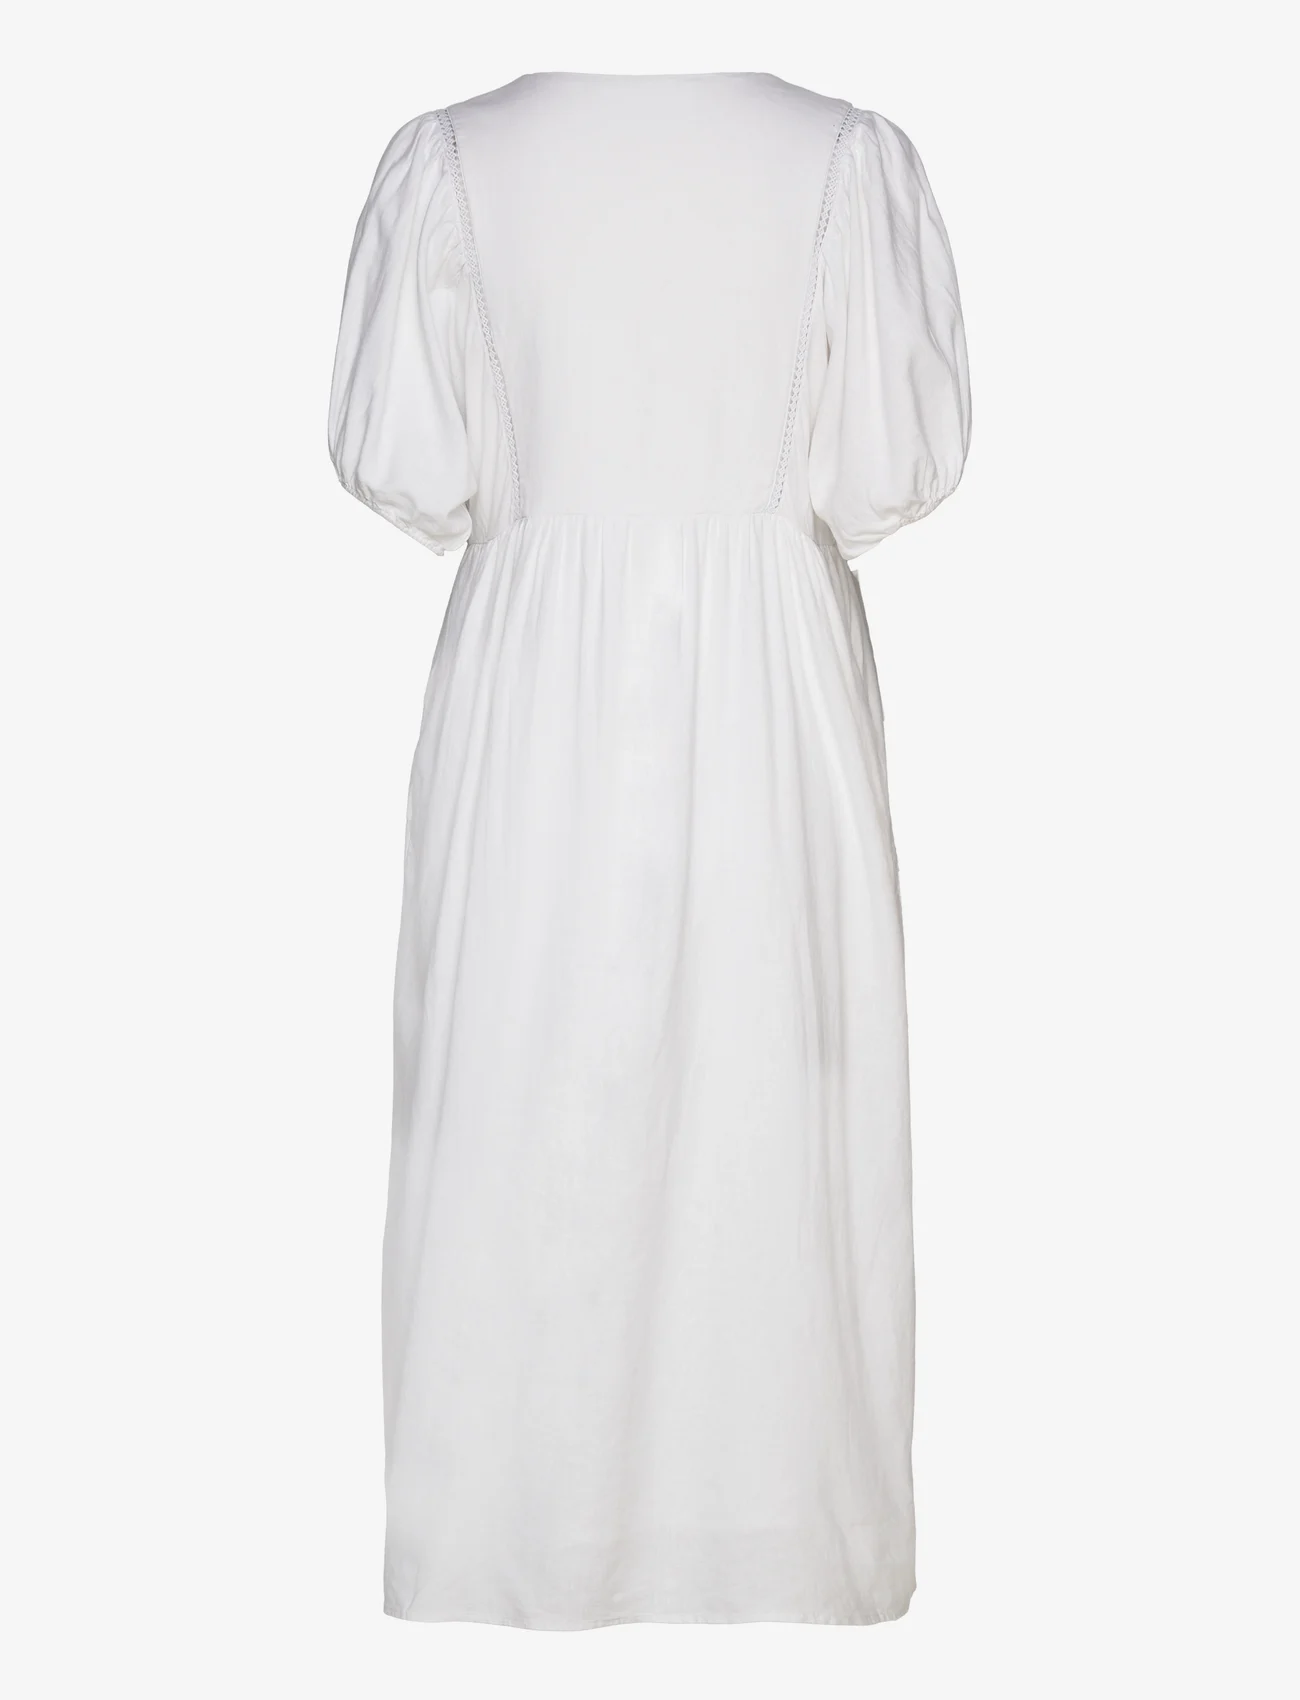 Levete Room - LR-NAJA - marškinių tipo suknelės - l100 - white - 1